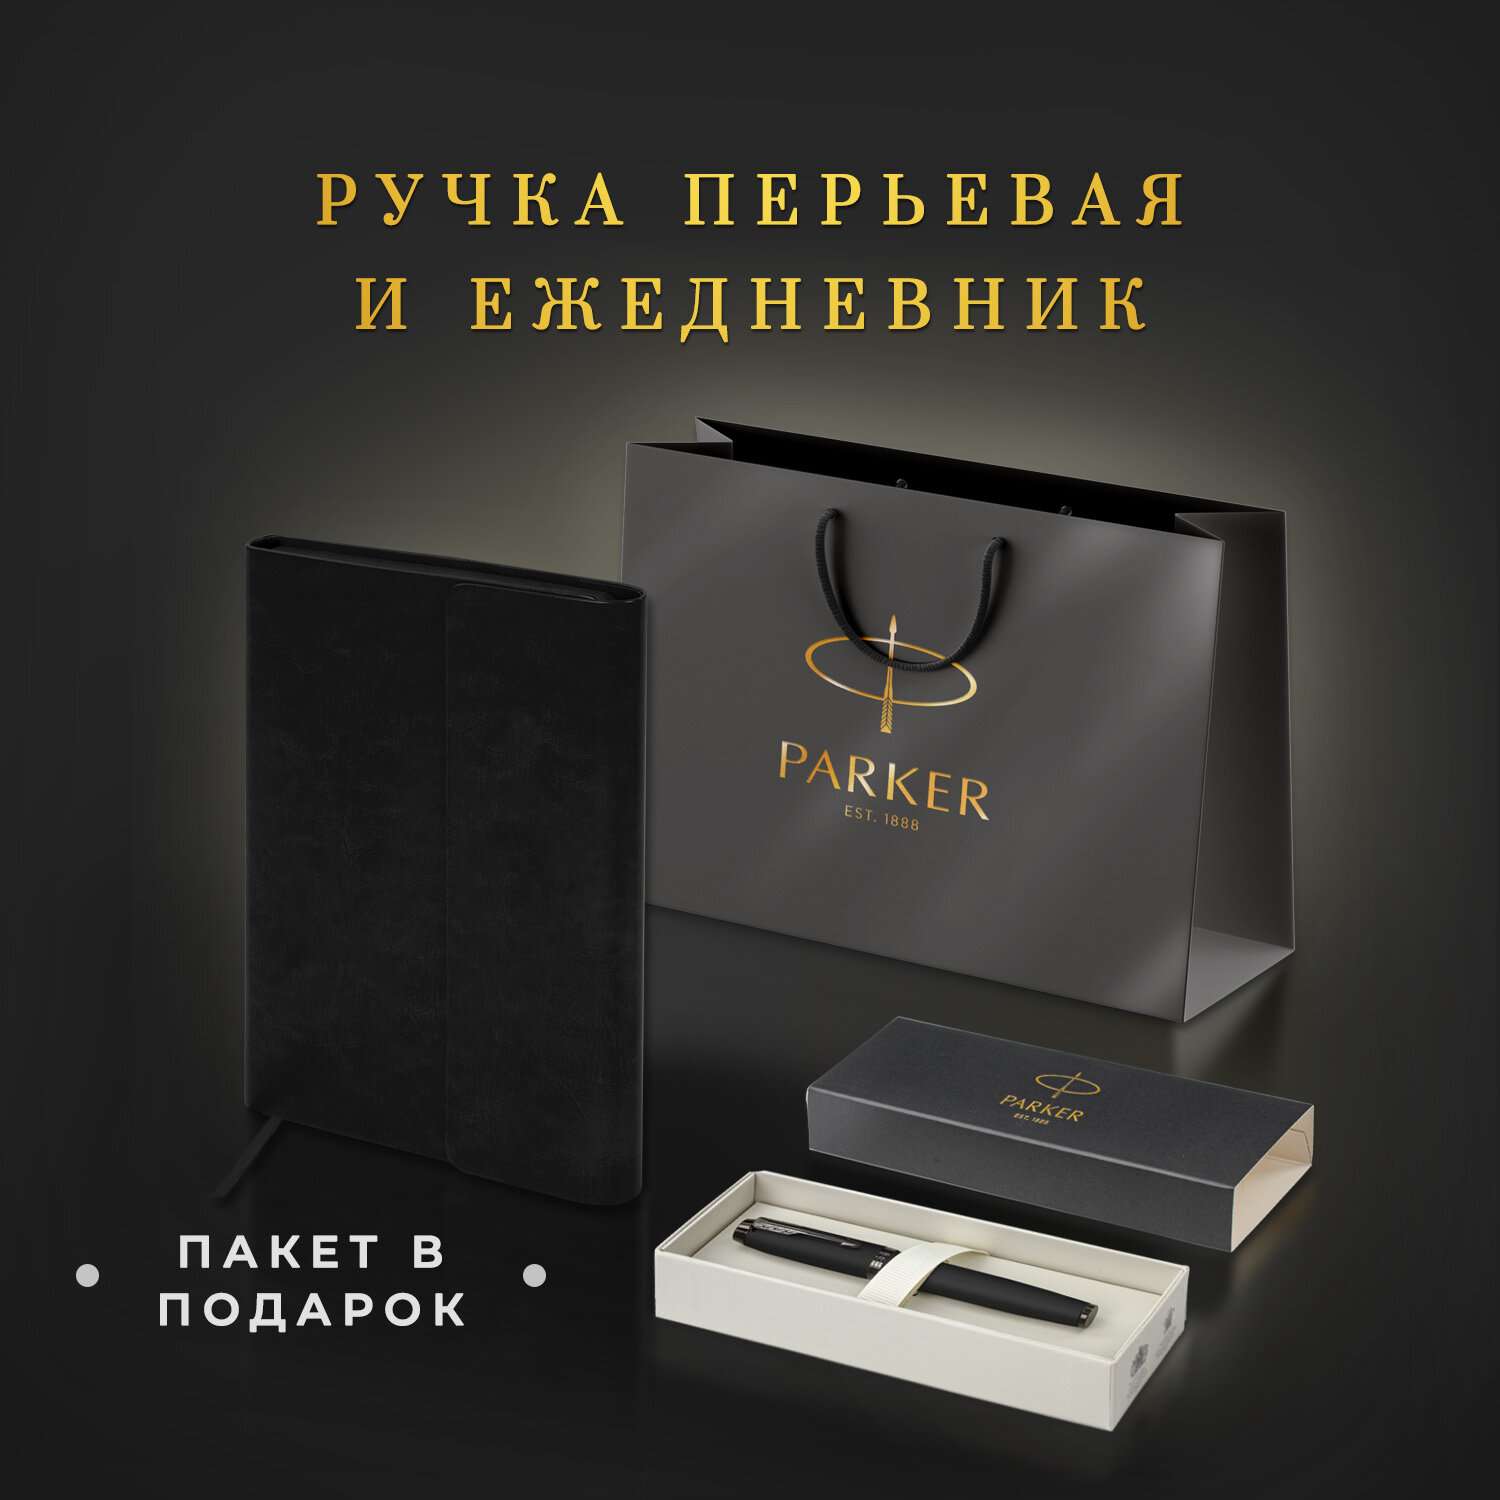 Подарочный набор PARKER ручка перьевая Parker и ежедневник А5 - фото 2